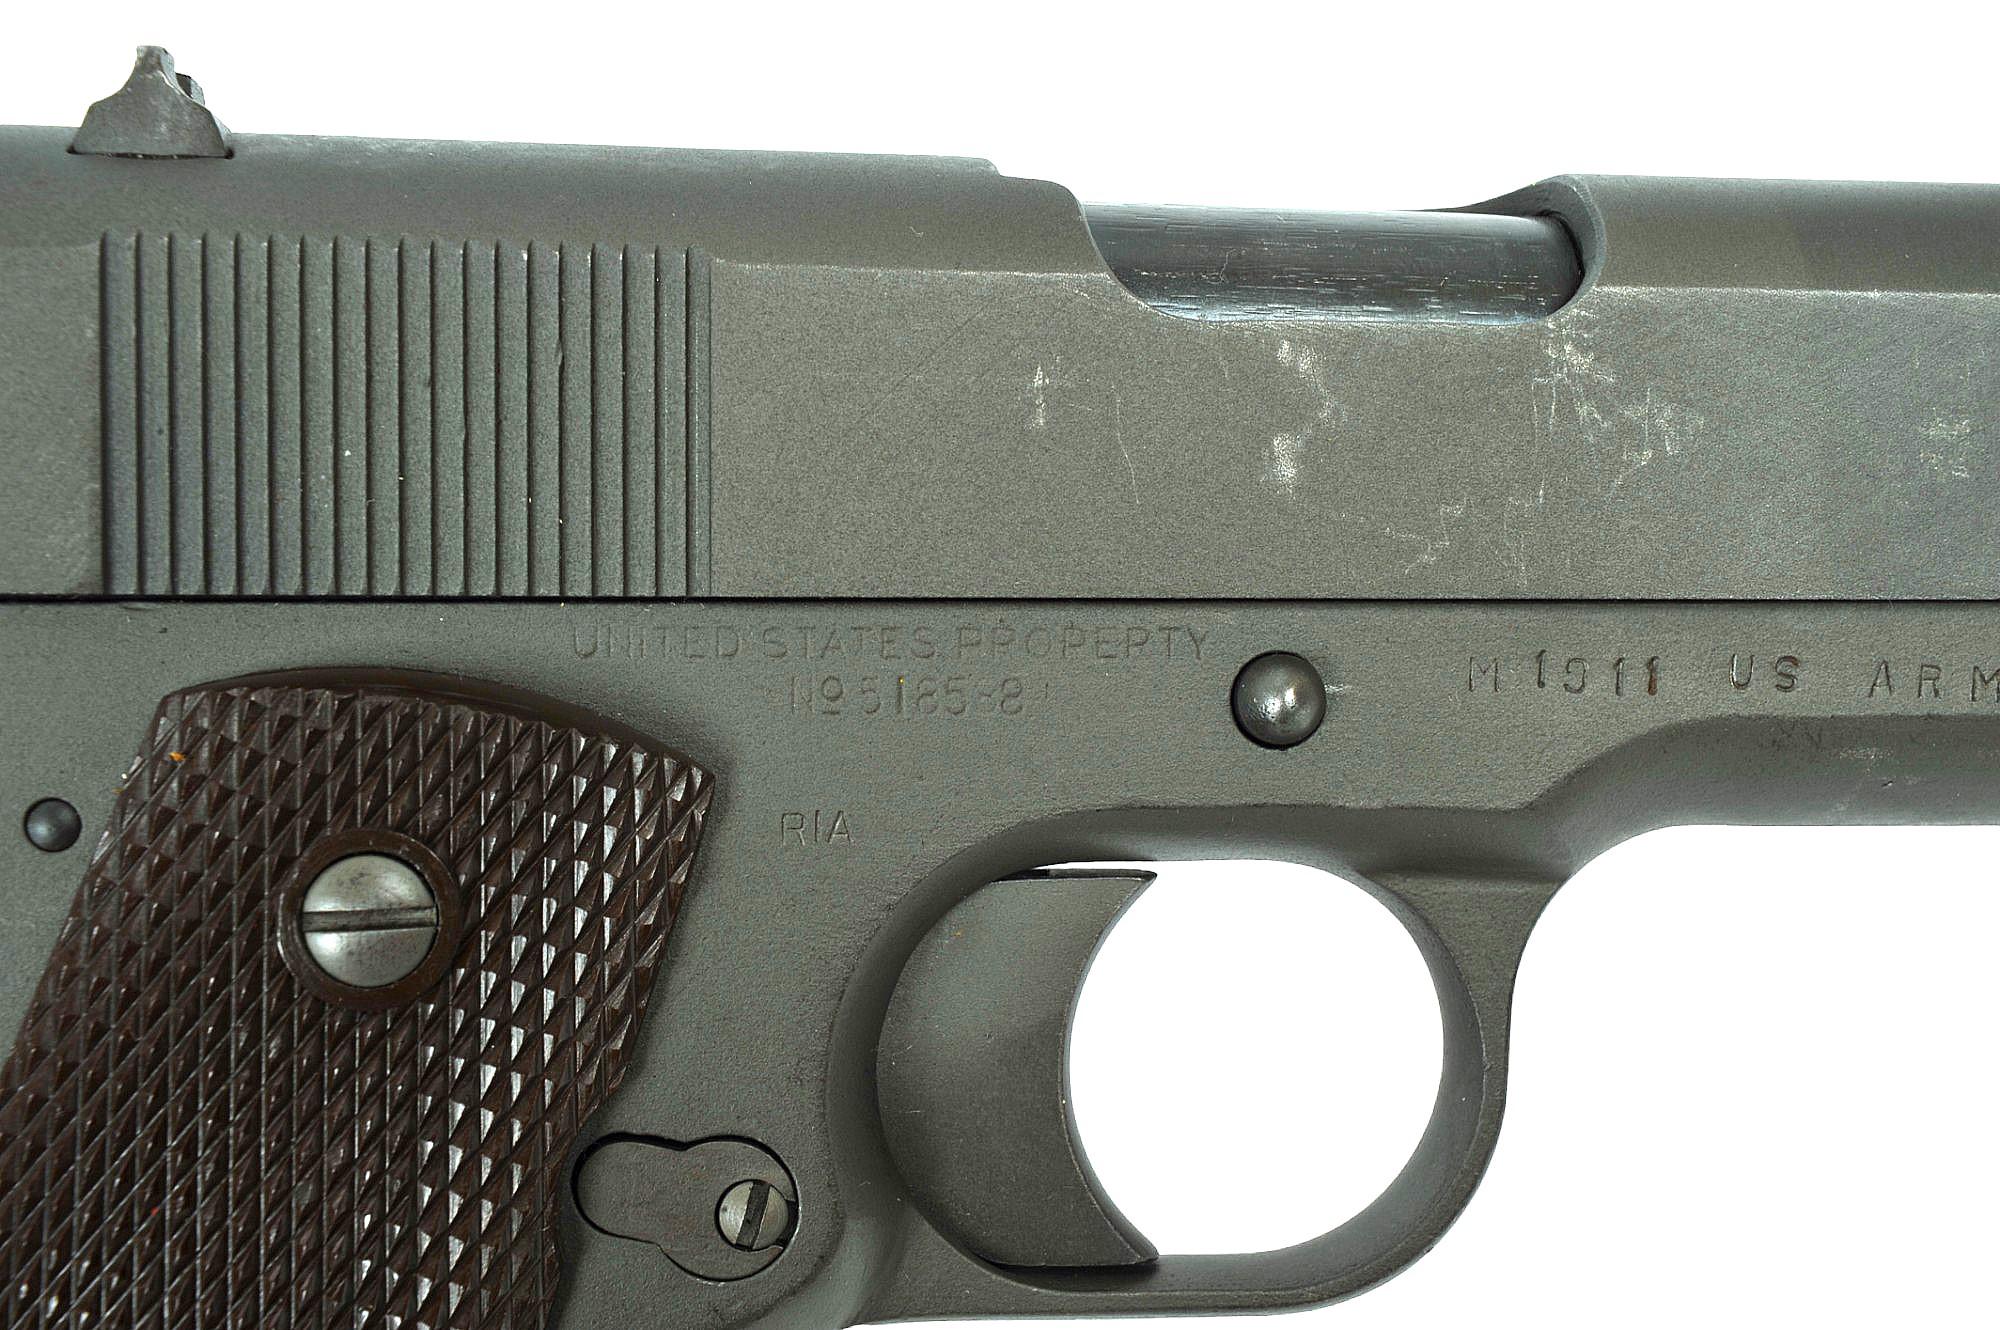 Ithaca M1911 45APC Semi-auto Pistol FFL Required: 518588(KDC1)